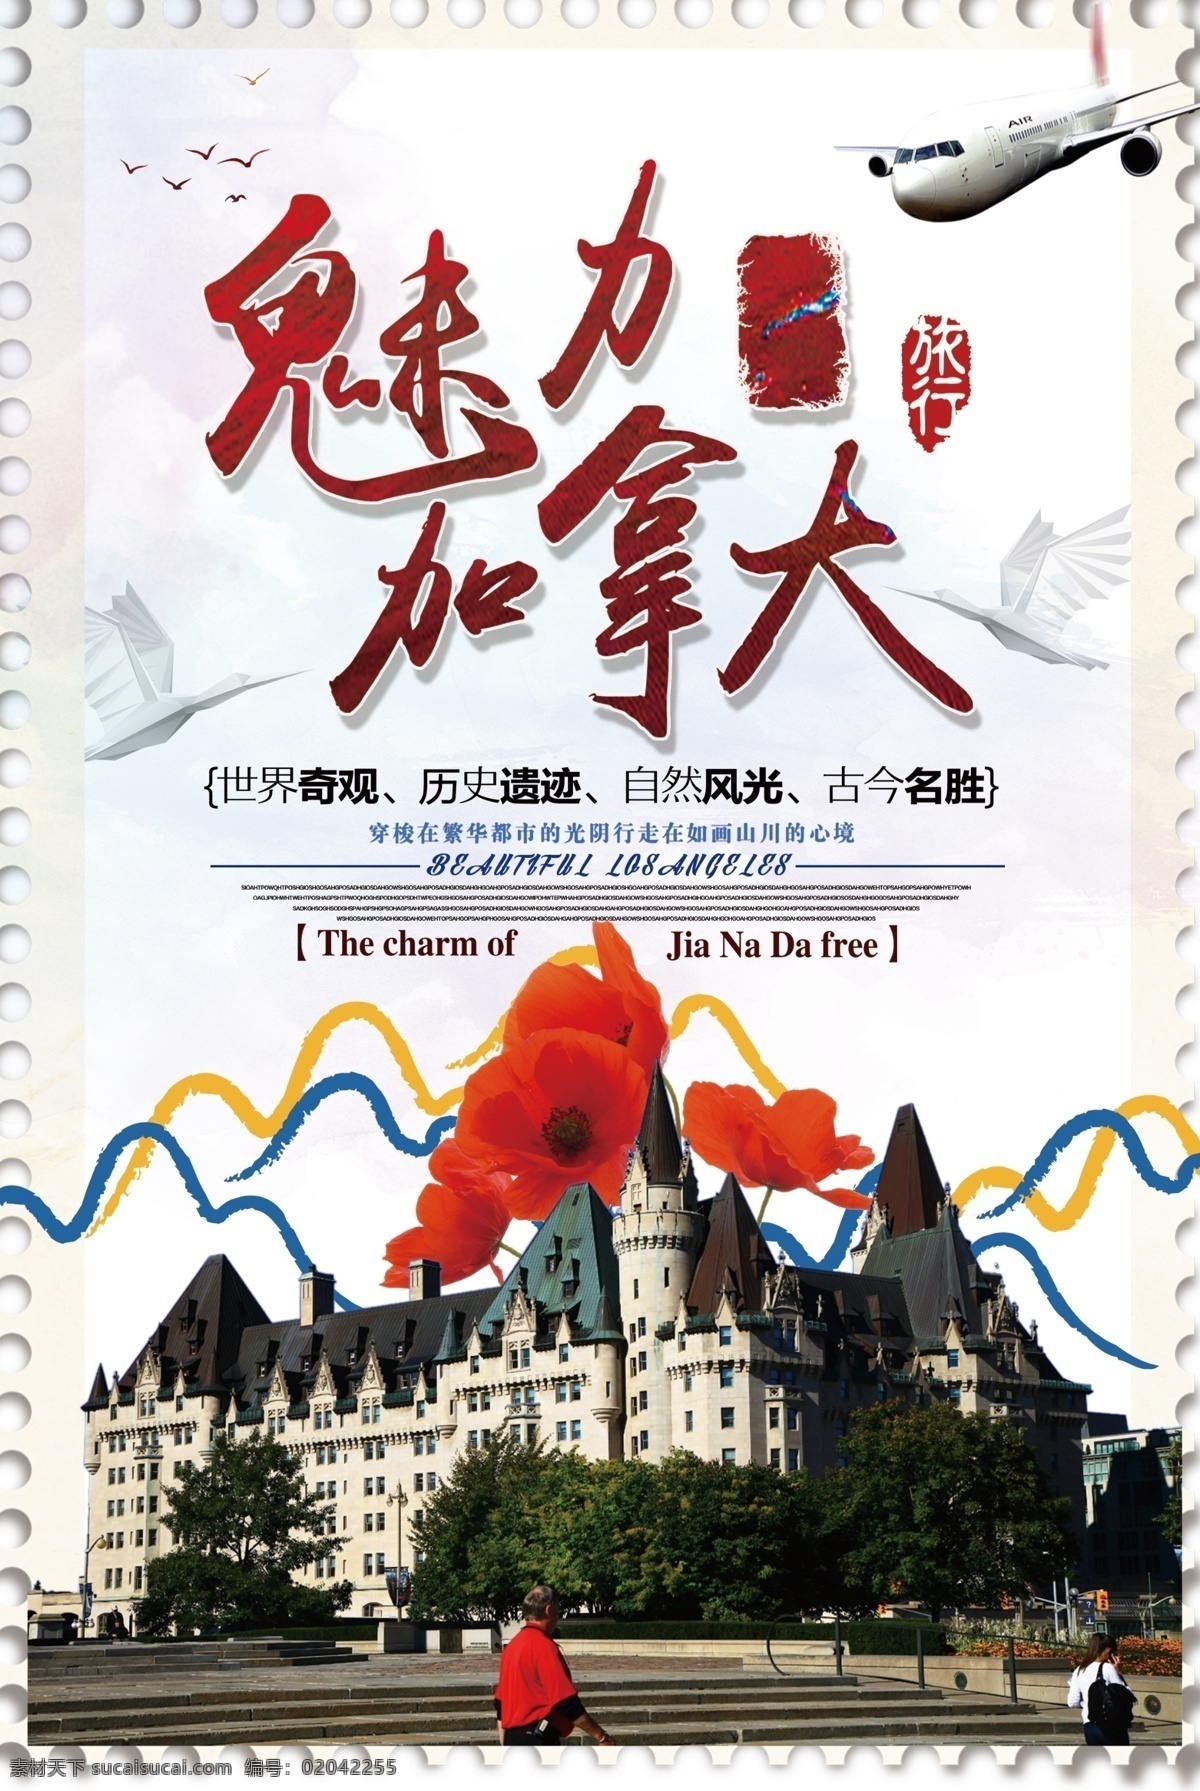 2018 年 白色 大气 美丽 加拿大 旅游 海报 推介会 免费模板 加拿大海报 加拿大宣传单 畅游加拿大 加拿大单页 加拿大彩页 加拿大展架 加拿大指南 加拿大行程 加拿大传单 加拿大广告 加拿大旅游 白色大气 大气旅游